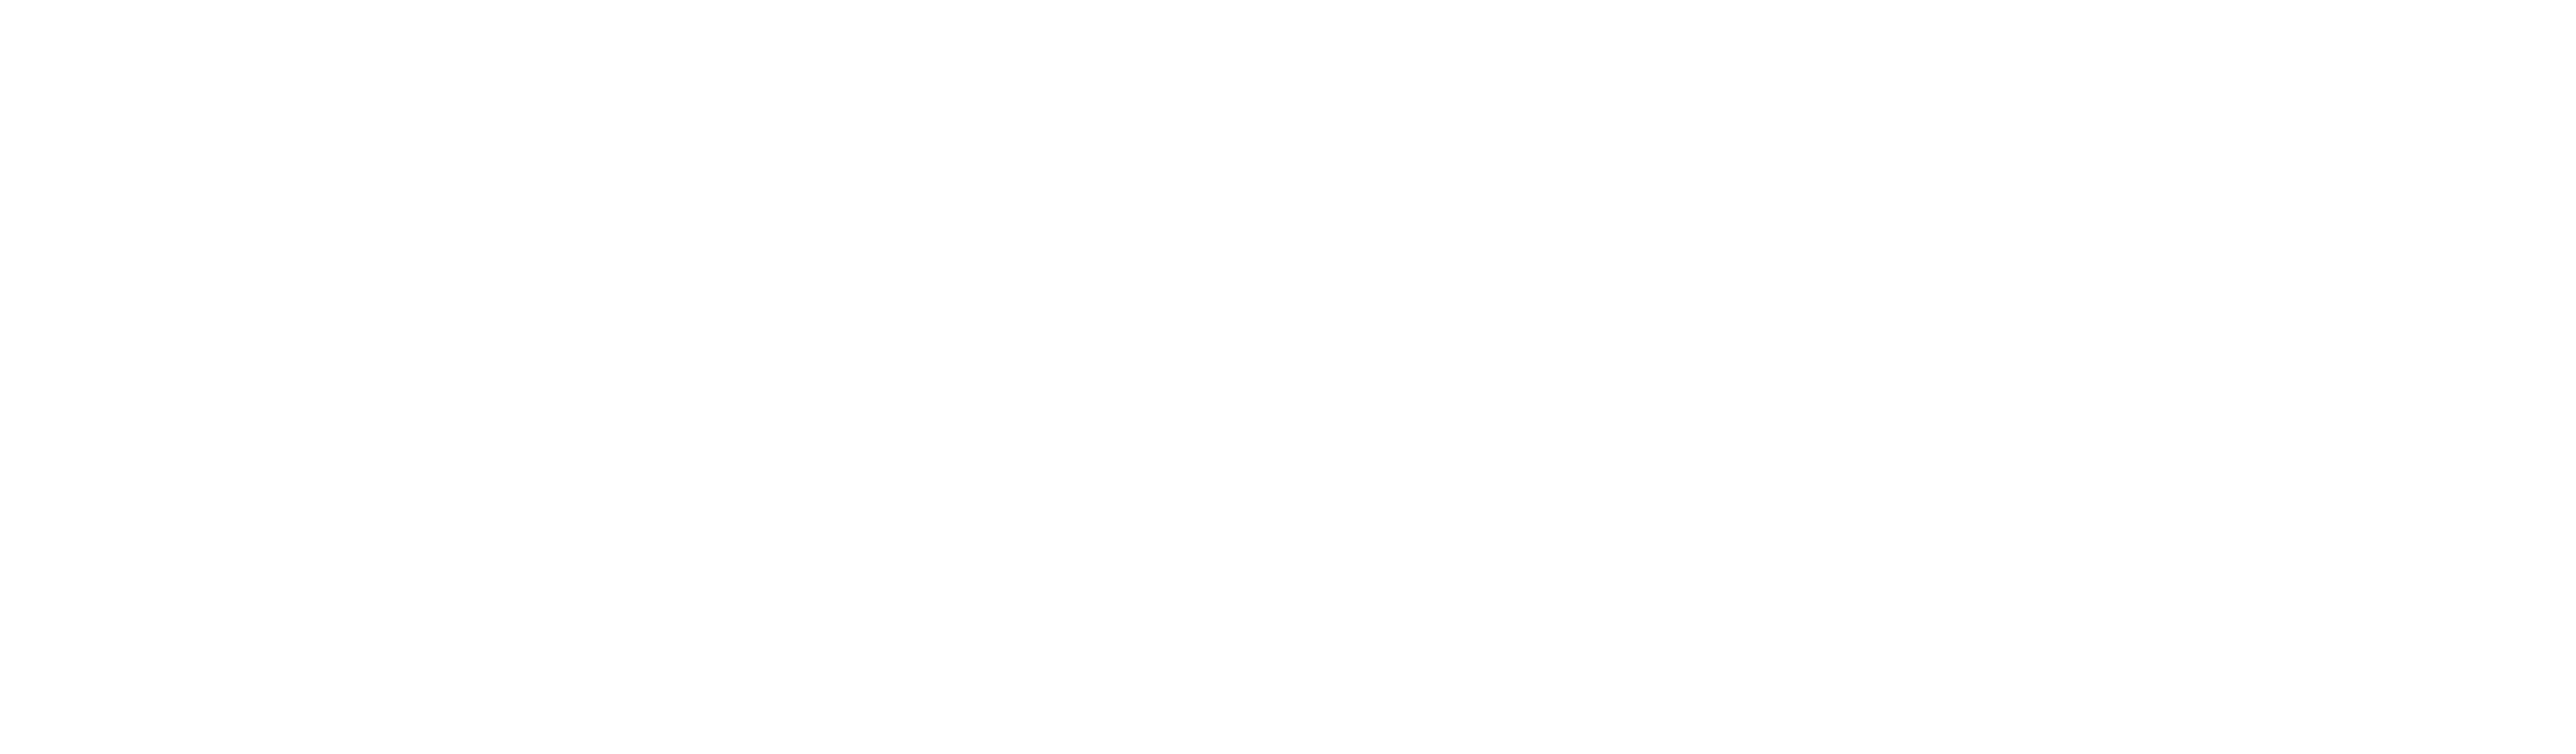 Roberto Gaudiano Fotografo